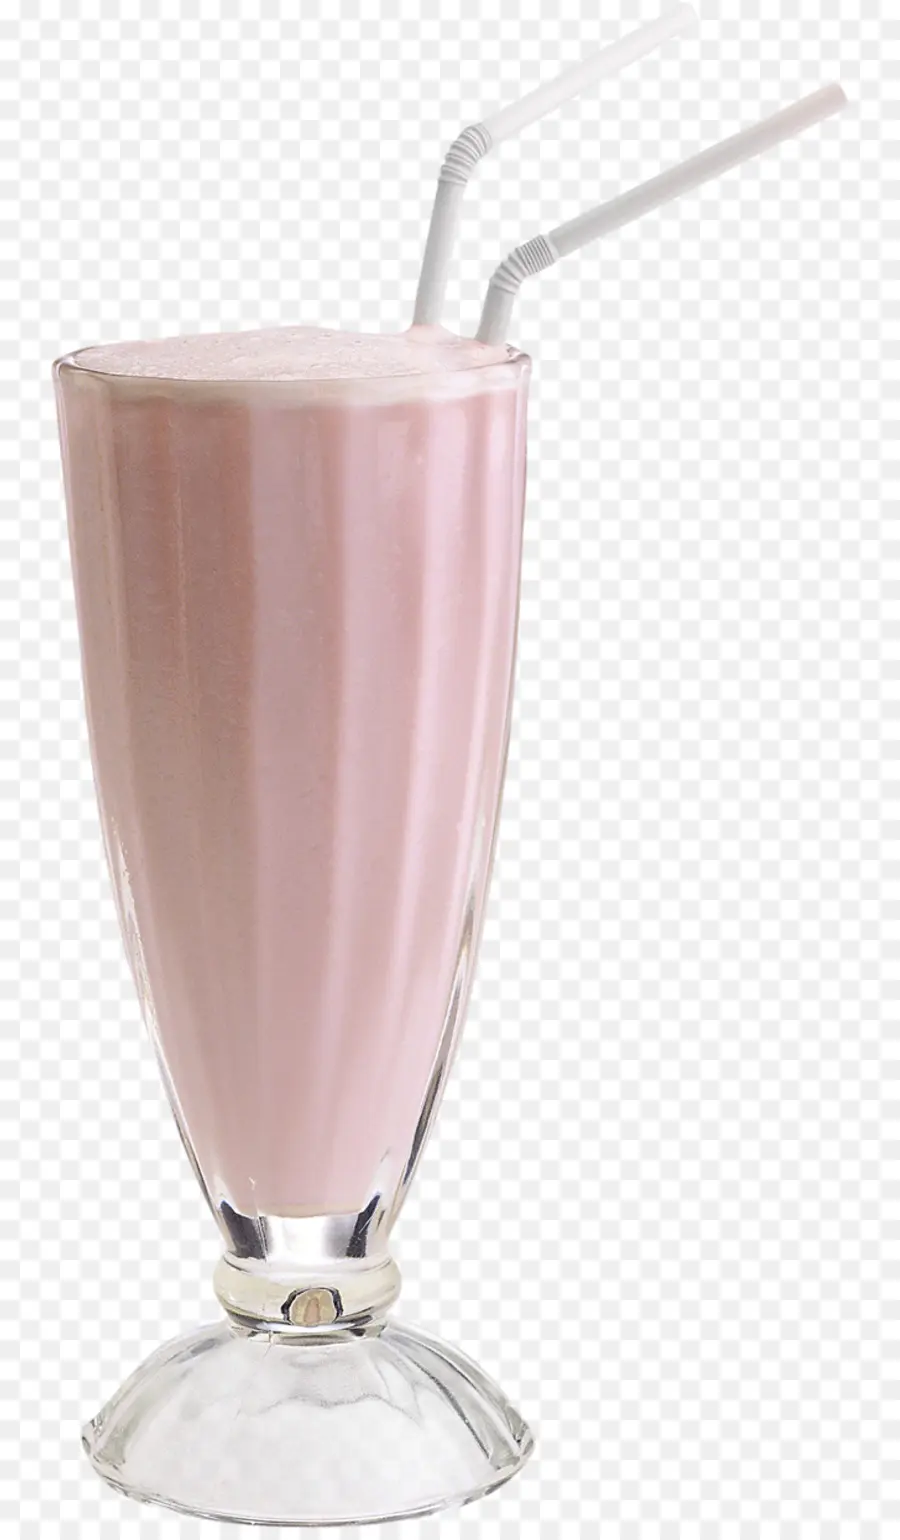 мороженое，молочный коктейль PNG